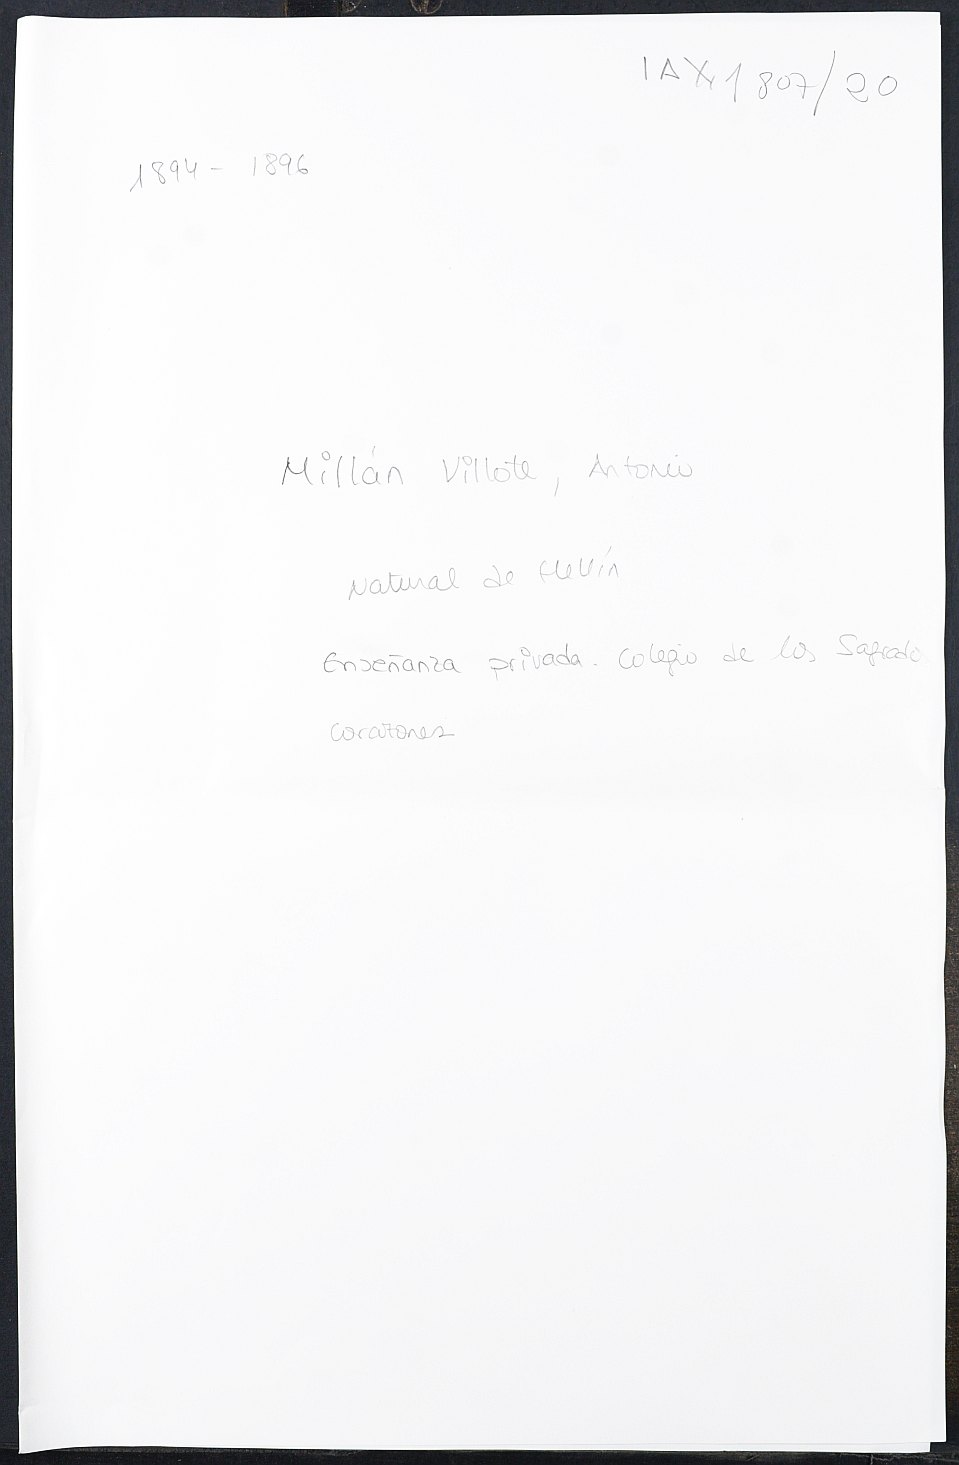 Expediente académico de Antonio Millán Villote.